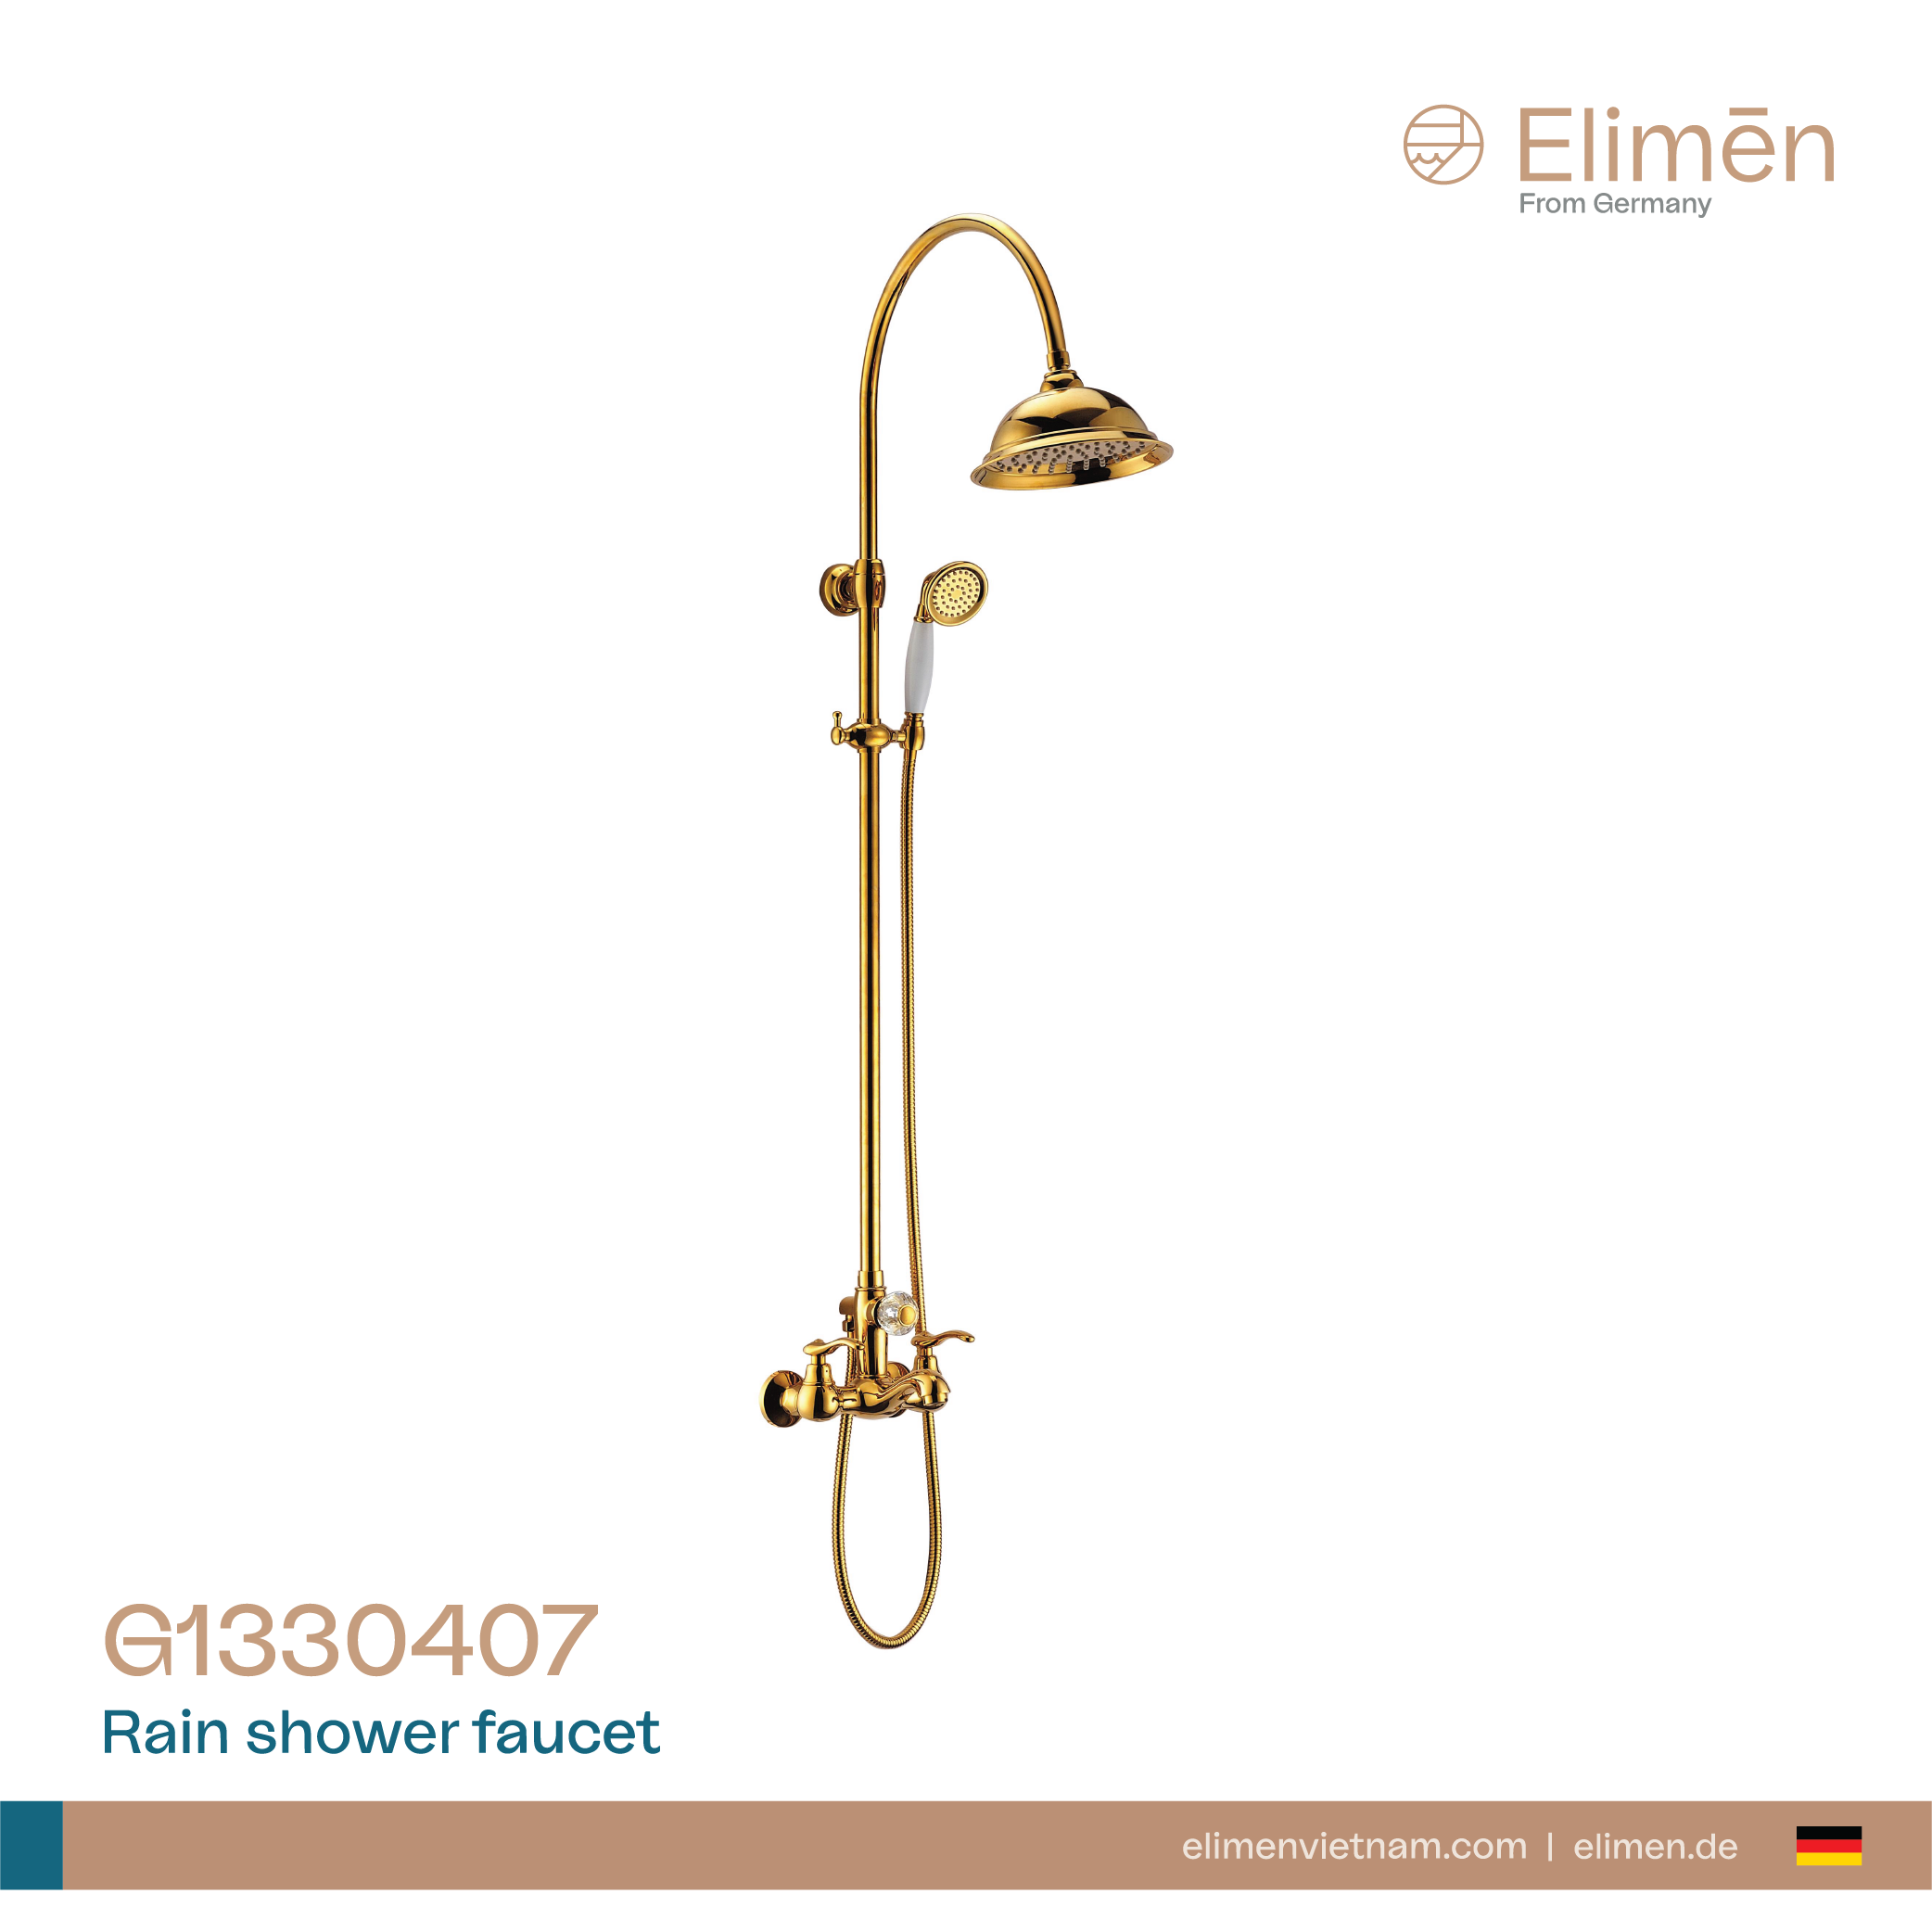 Sen cây tắm nóng lạnh màu đồng, cổ điển Elimen - MÃ G1330407